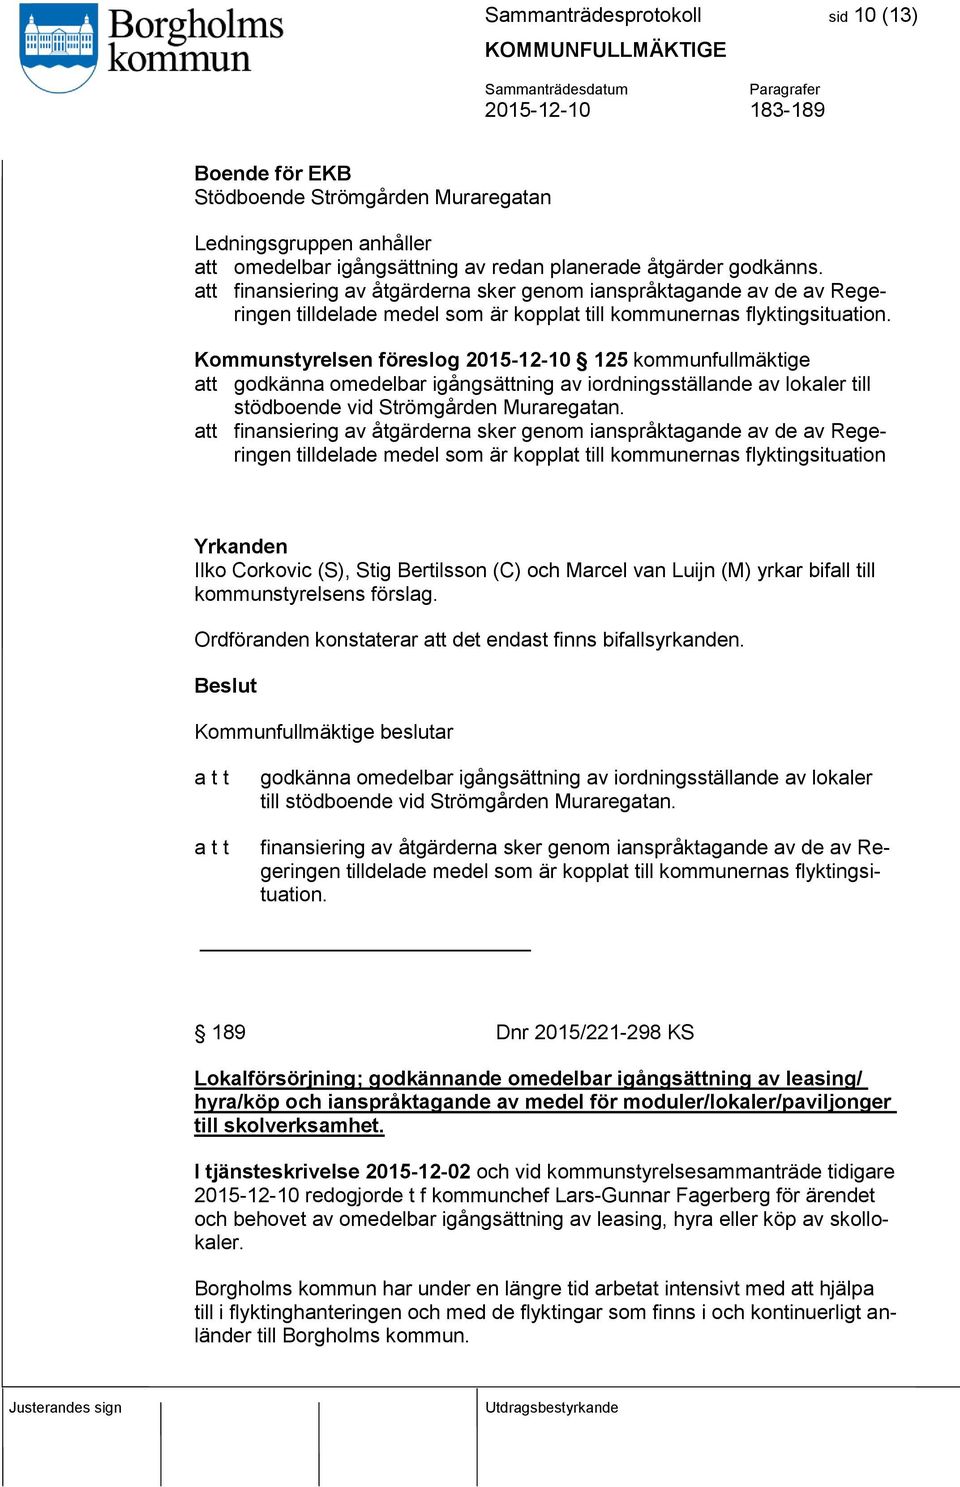 Kommunstyrelsen föreslog 2015-12-10 125 kommunfullmäktige att godkänna omedelbar igångsättning av iordningsställande av lokaler till stödboende vid Strömgården Muraregatan.